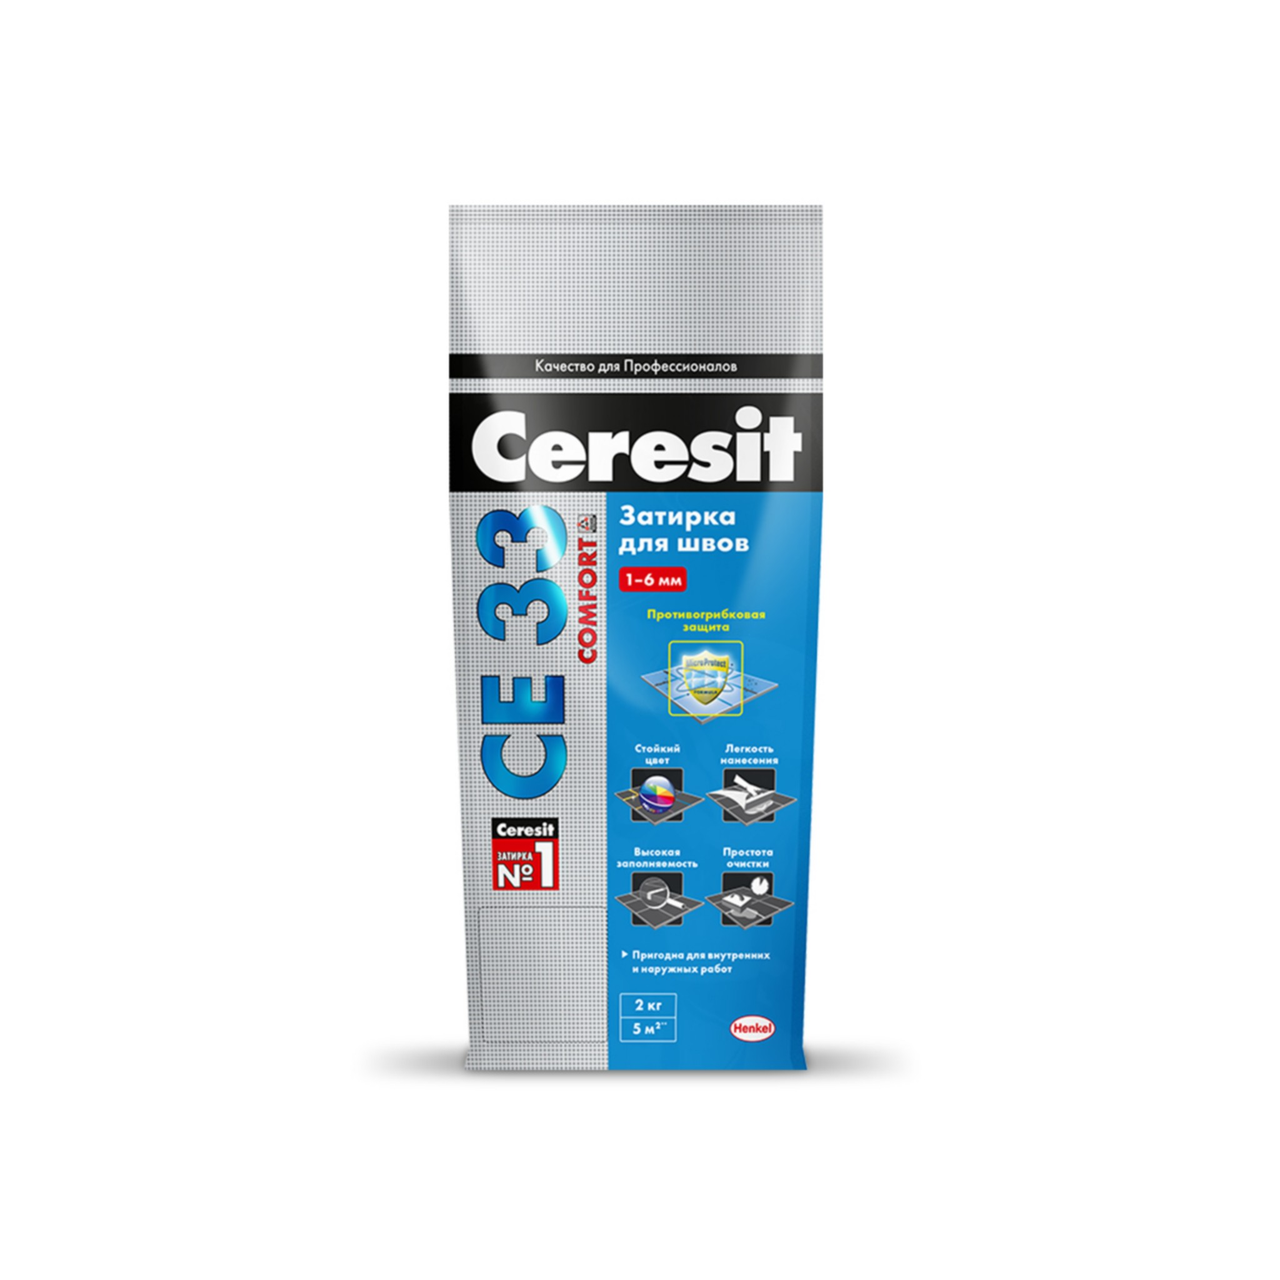 Ceresit  CE 33 Comfort затирка для узких швов, цвет: Небесный (Sky), 2 кг